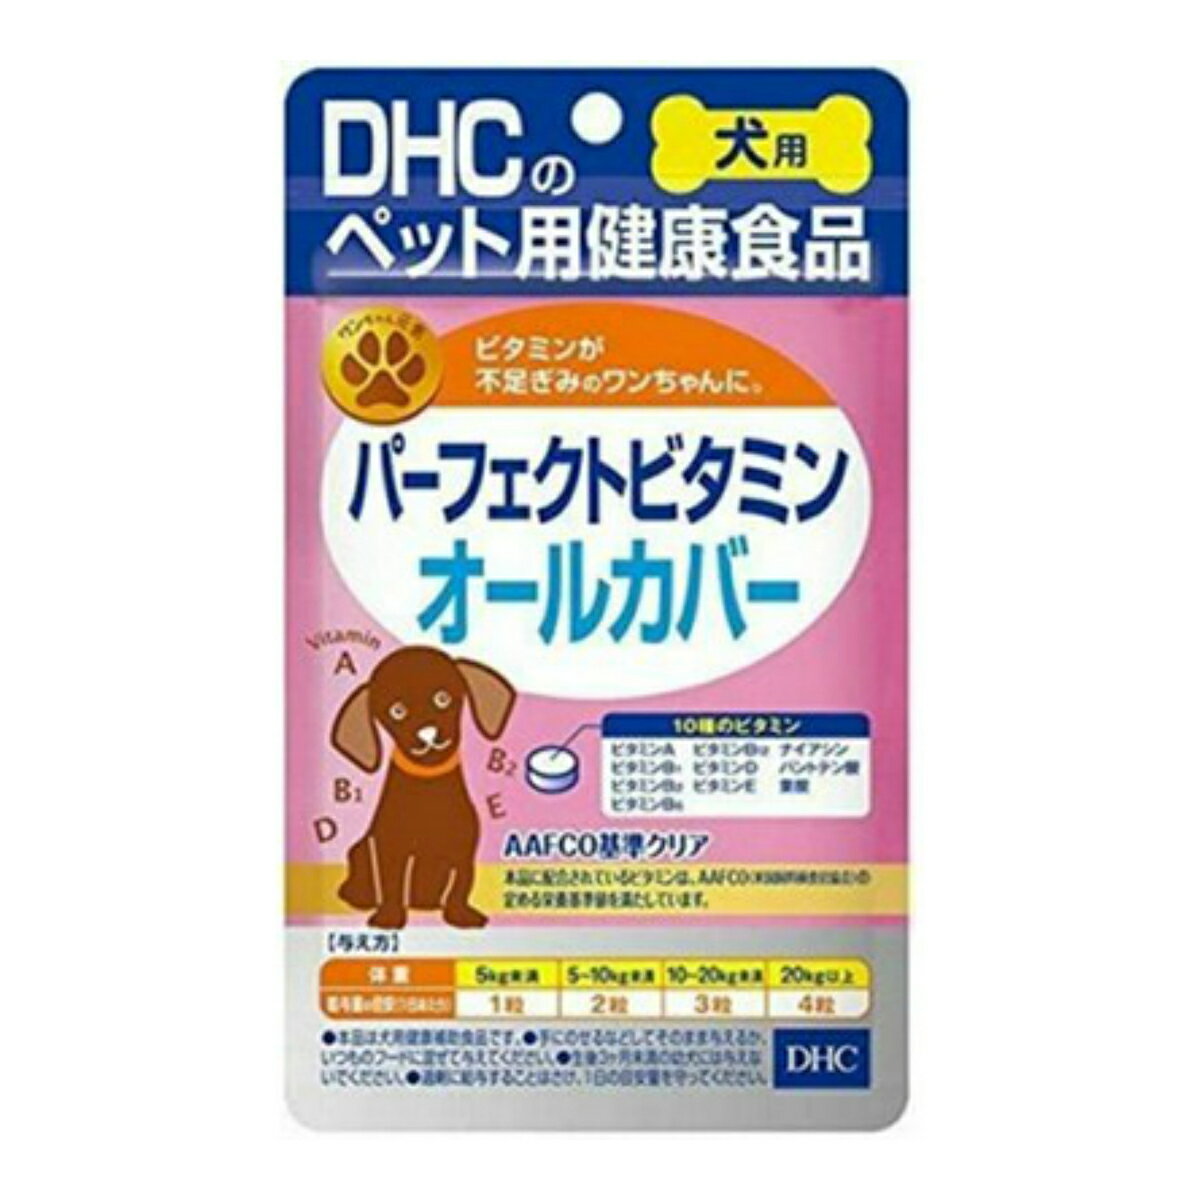 商品名：DHC ペット用健康食品 犬用 パーフェクトビタミンオールカバー 60粒内容量：60粒JANコード：4511413625125発売元、製造元、輸入元又は販売元：DHC商品番号：103-4511413625125商品説明AAFCO基準値を満たした、ビタミン10種をバランスよく配合した犬用サプリメントです。おやつ感覚で与えられるよう、味はワンちゃん好みのチキン＆ポーク風味に仕上げました。広告文責：アットライフ株式会社TEL 050-3196-1510 ※商品パッケージは変更の場合あり。メーカー欠品または完売の際、キャンセルをお願いすることがあります。ご了承ください。